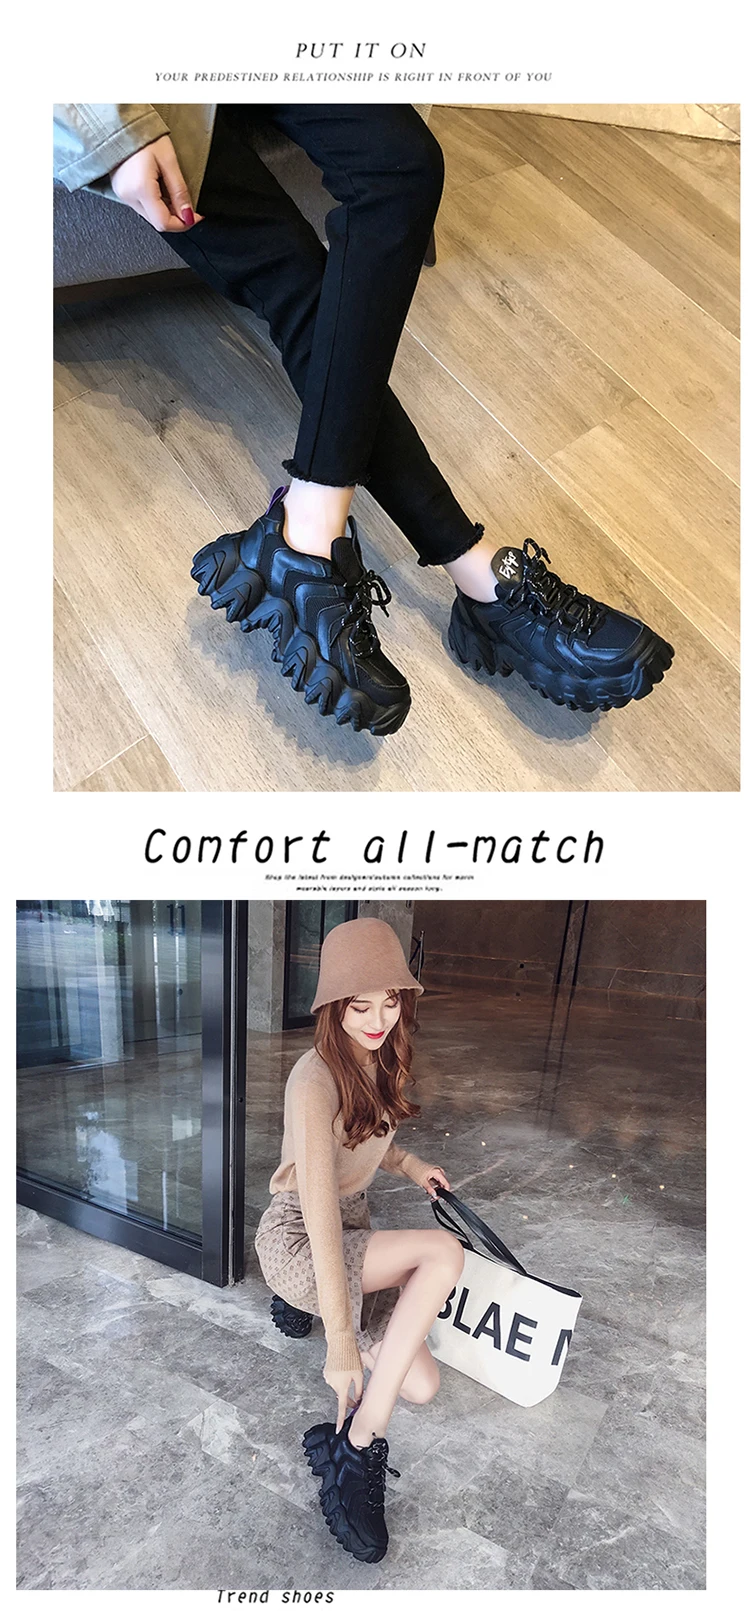 Новая женская обувь; повседневная обувь на платформе; кроссовки; зимняя обувь; женская обувь на толстой подошве; спортивная обувь; Женская дышащая обувь